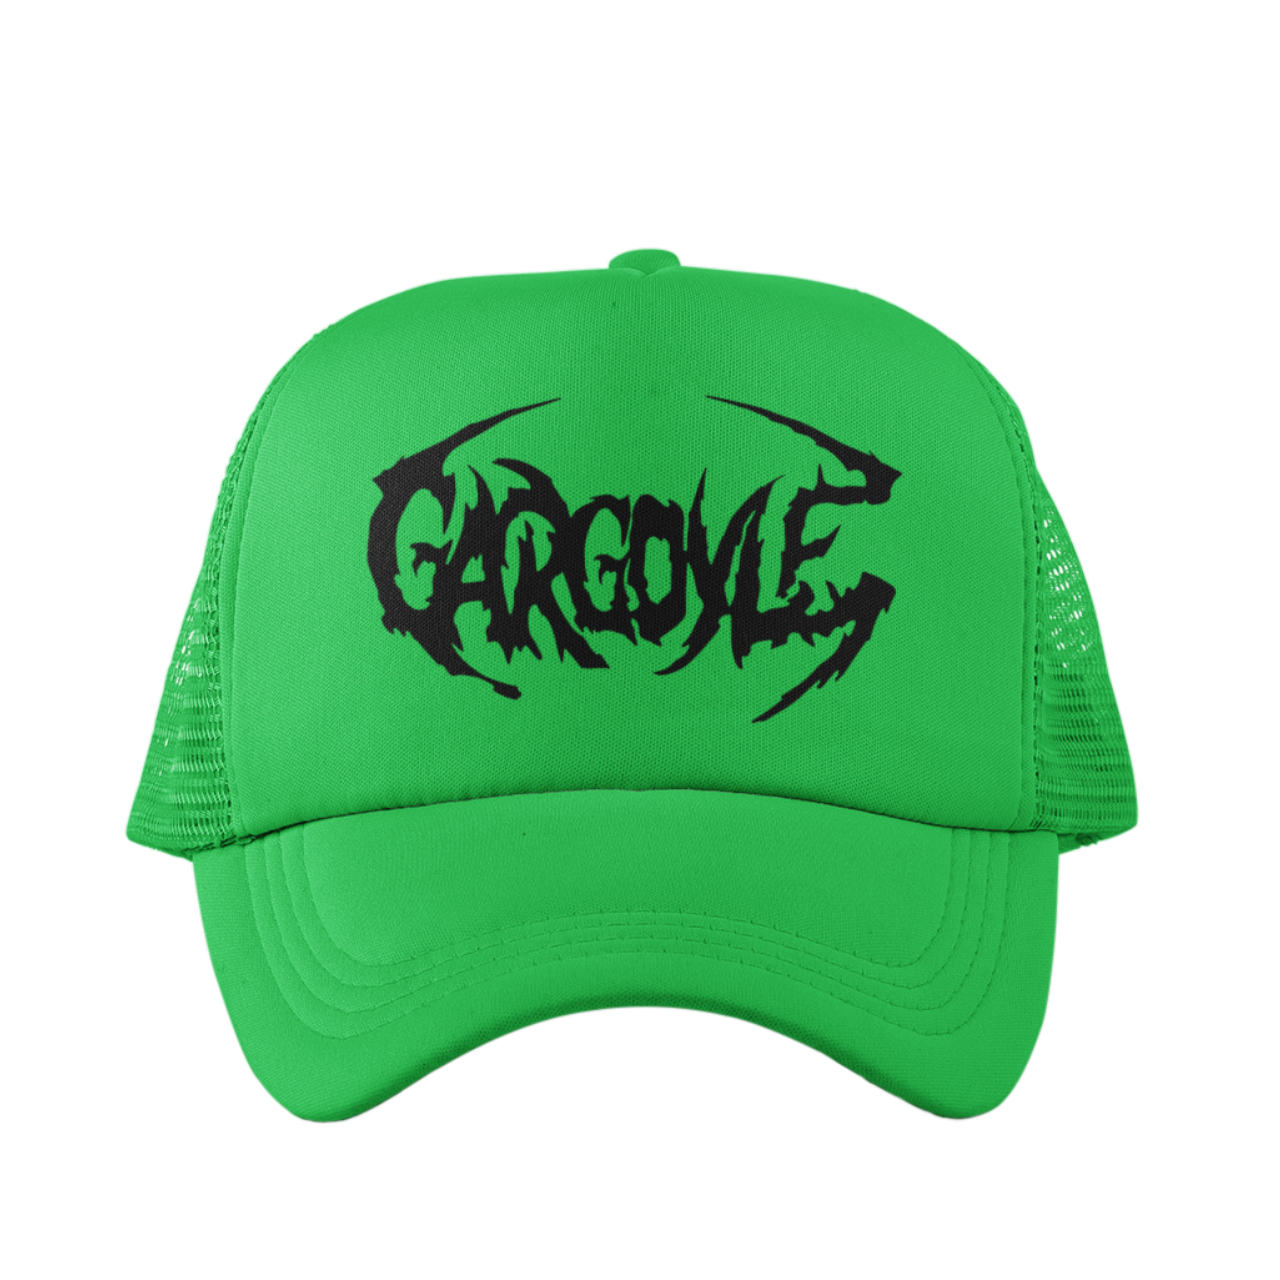 Organik Lyfestyle - Gargoyle G.A.N.G - Green & Black Hat